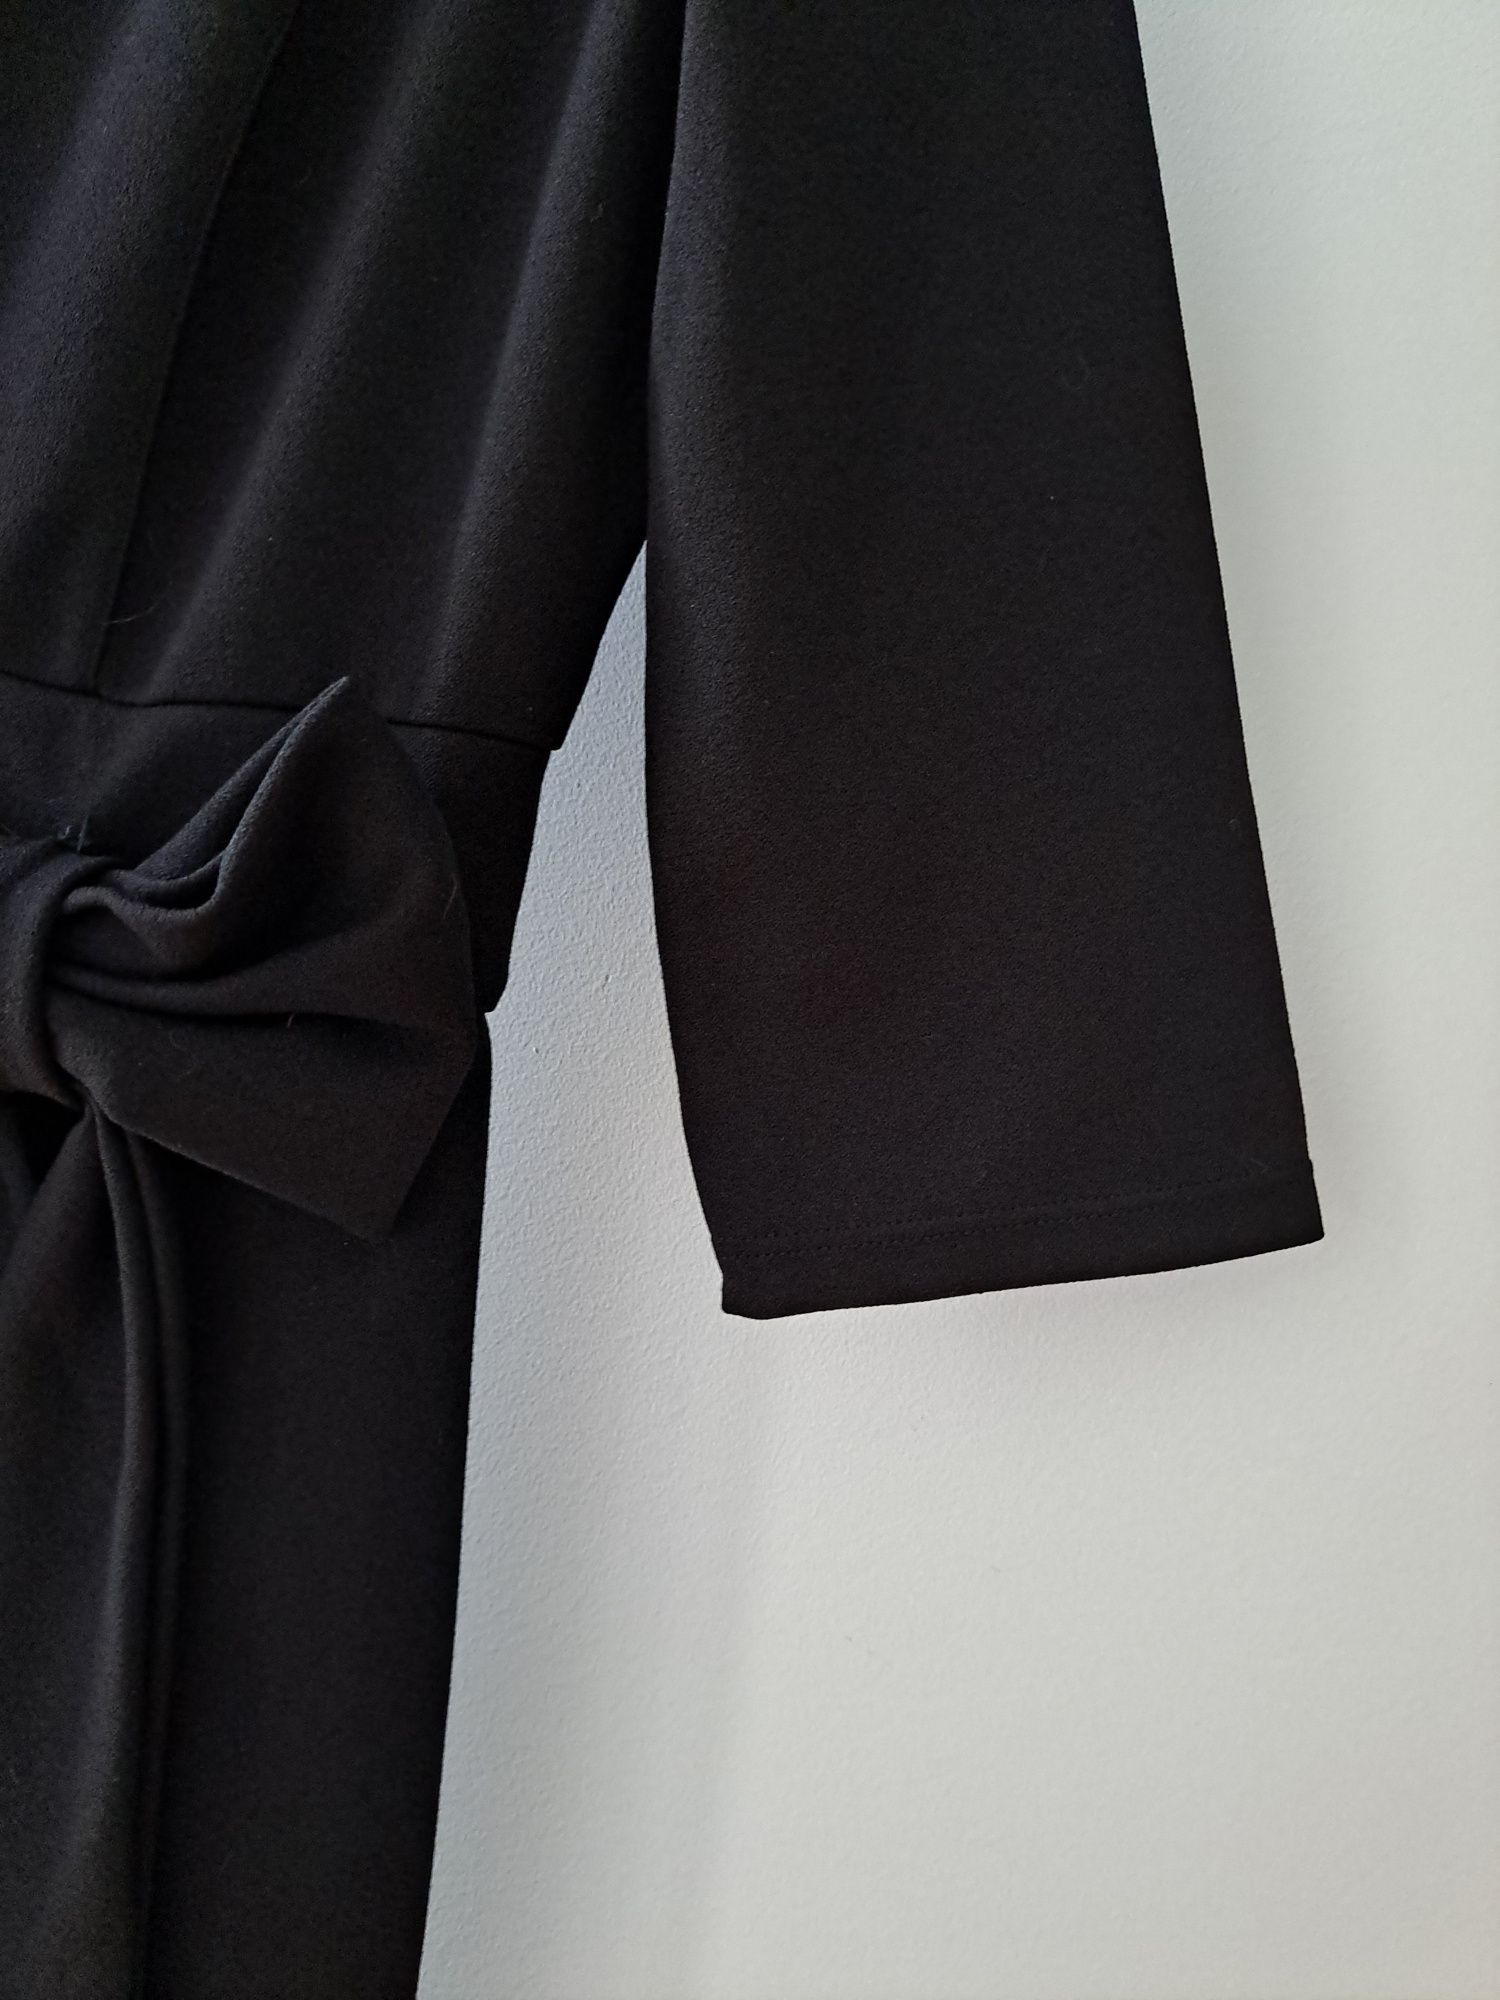 Vestido preto com um laço RMV Urban Concept